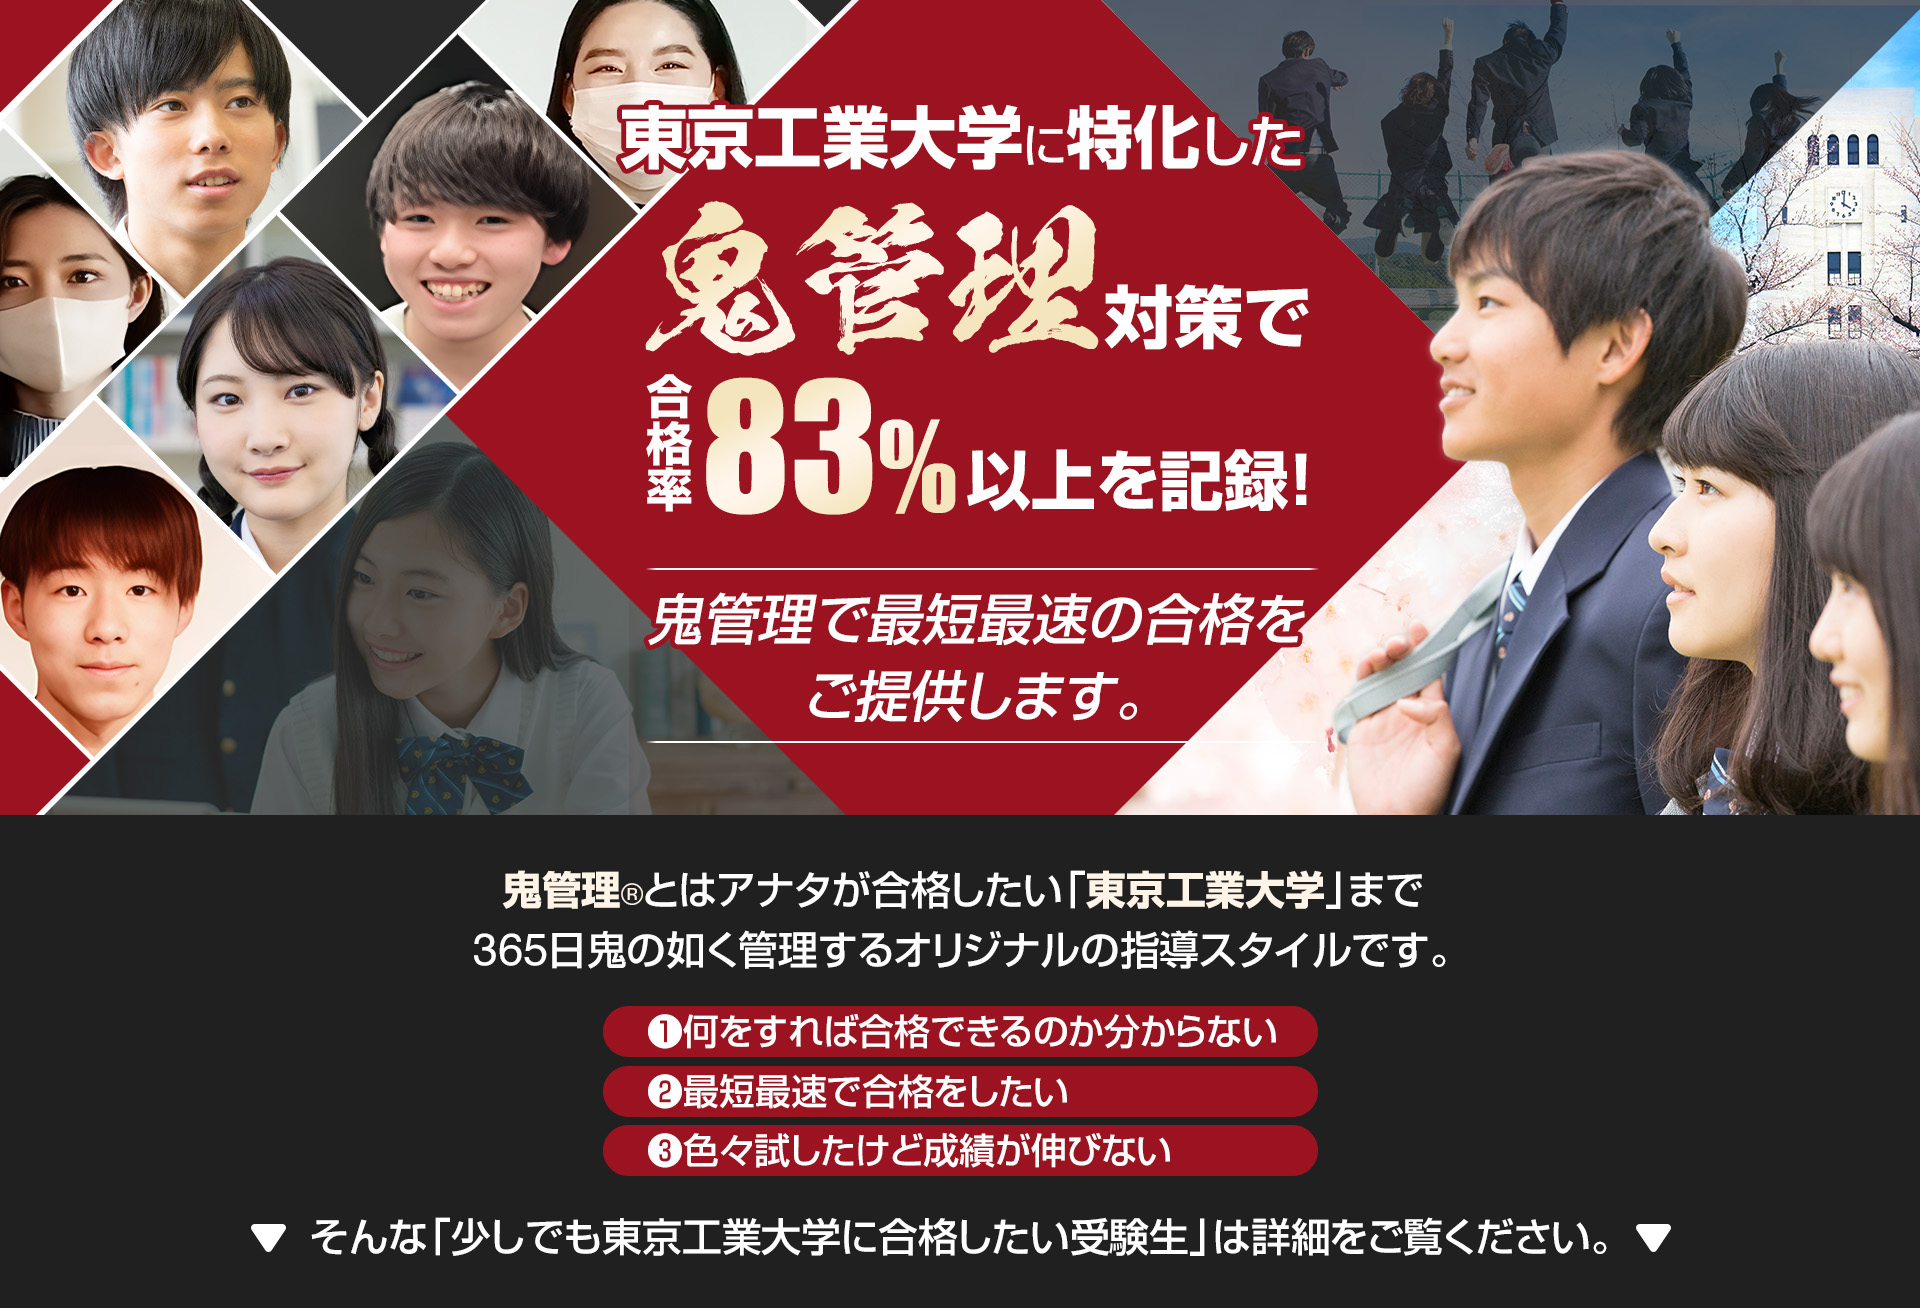 東京工業大学に特化した鬼管理対策で合格率83％以上を記録。鬼管理でアナタが合格したい東京工業大学への最短最速の合格を提供します。